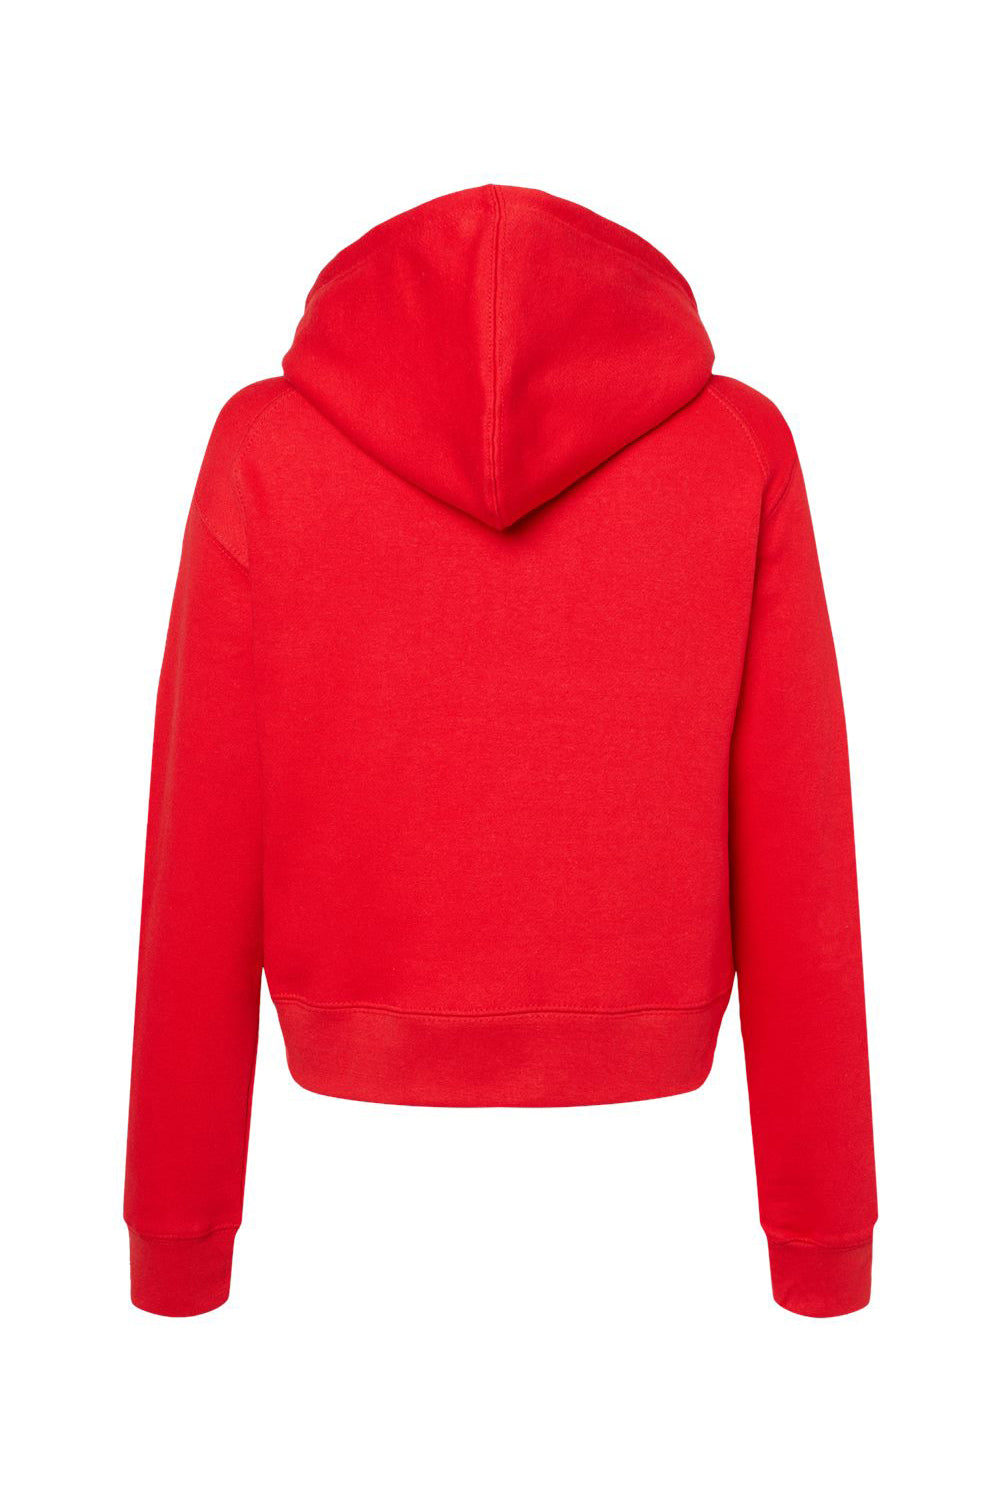 Badger 1261 Womens Crop Hooded Sweatshirt Hoodie Red Flat Back